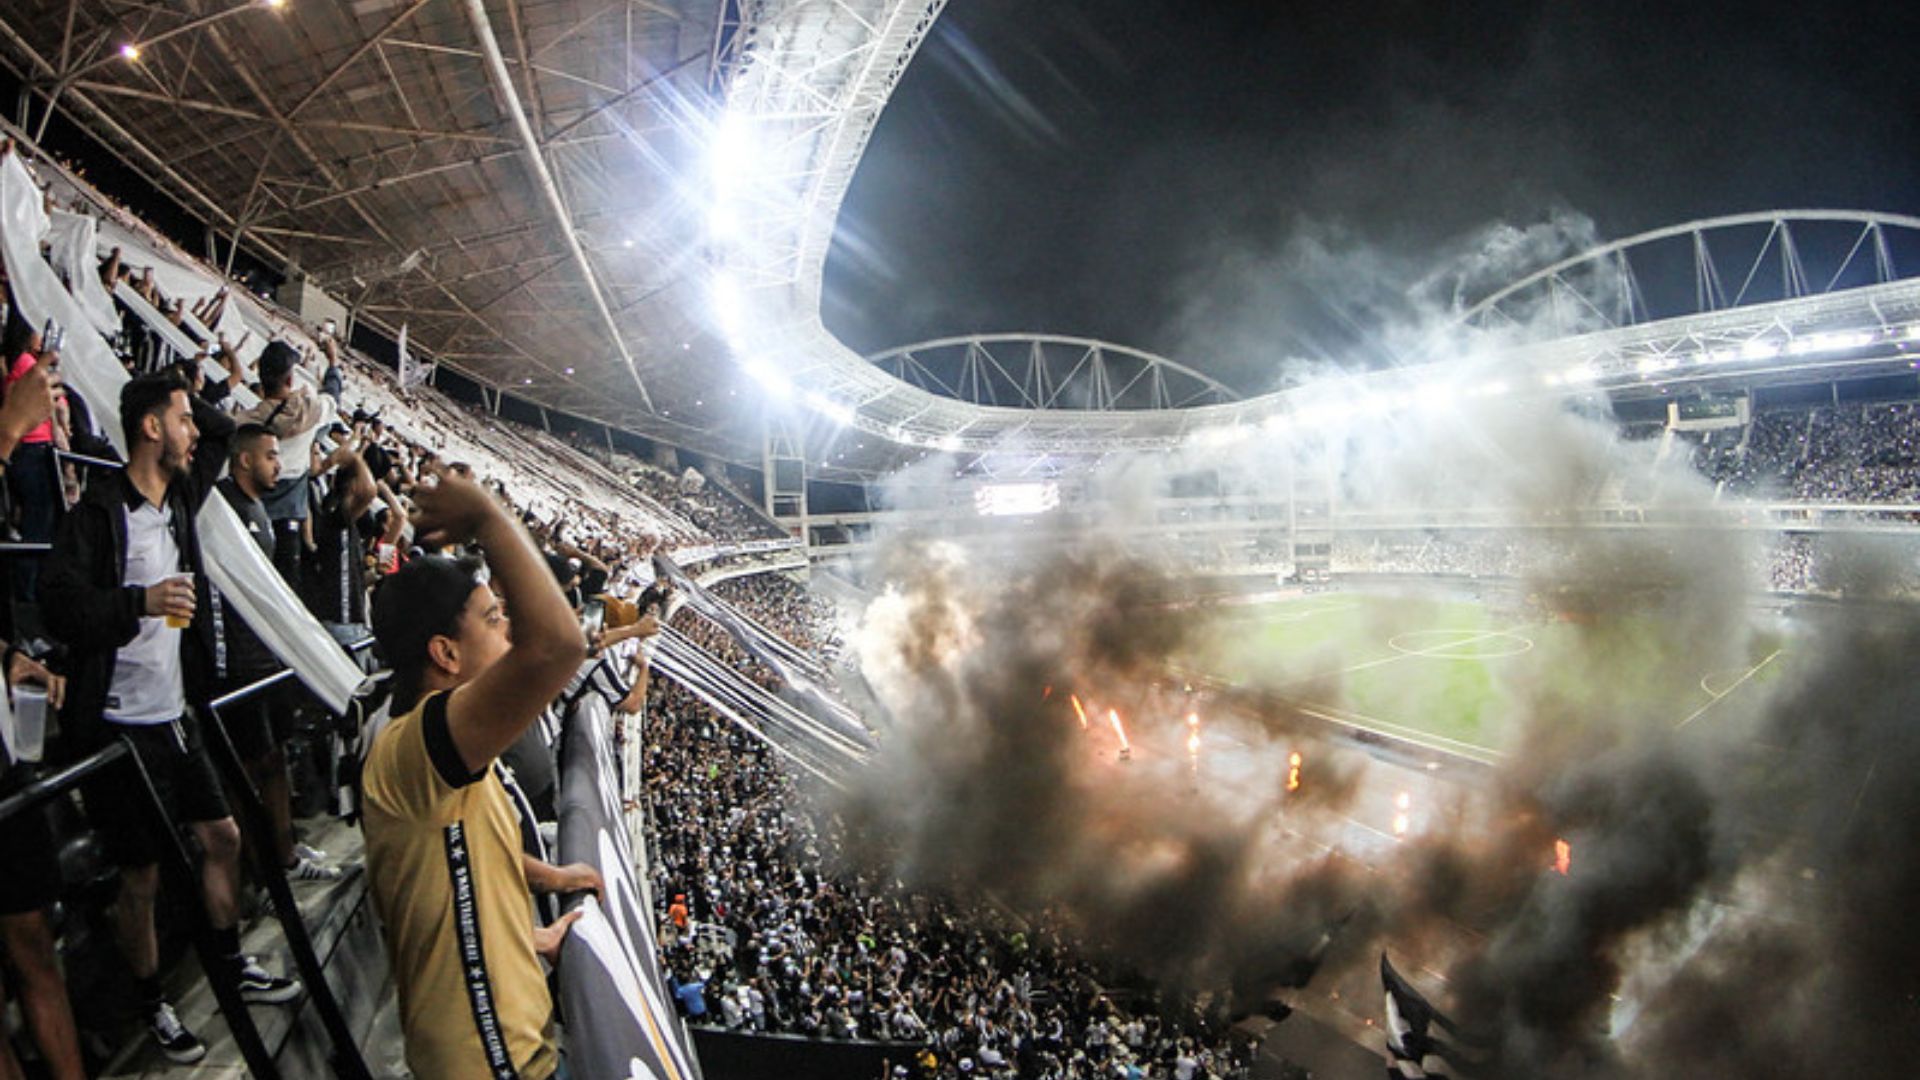 Botafogo crowd at Bragantino